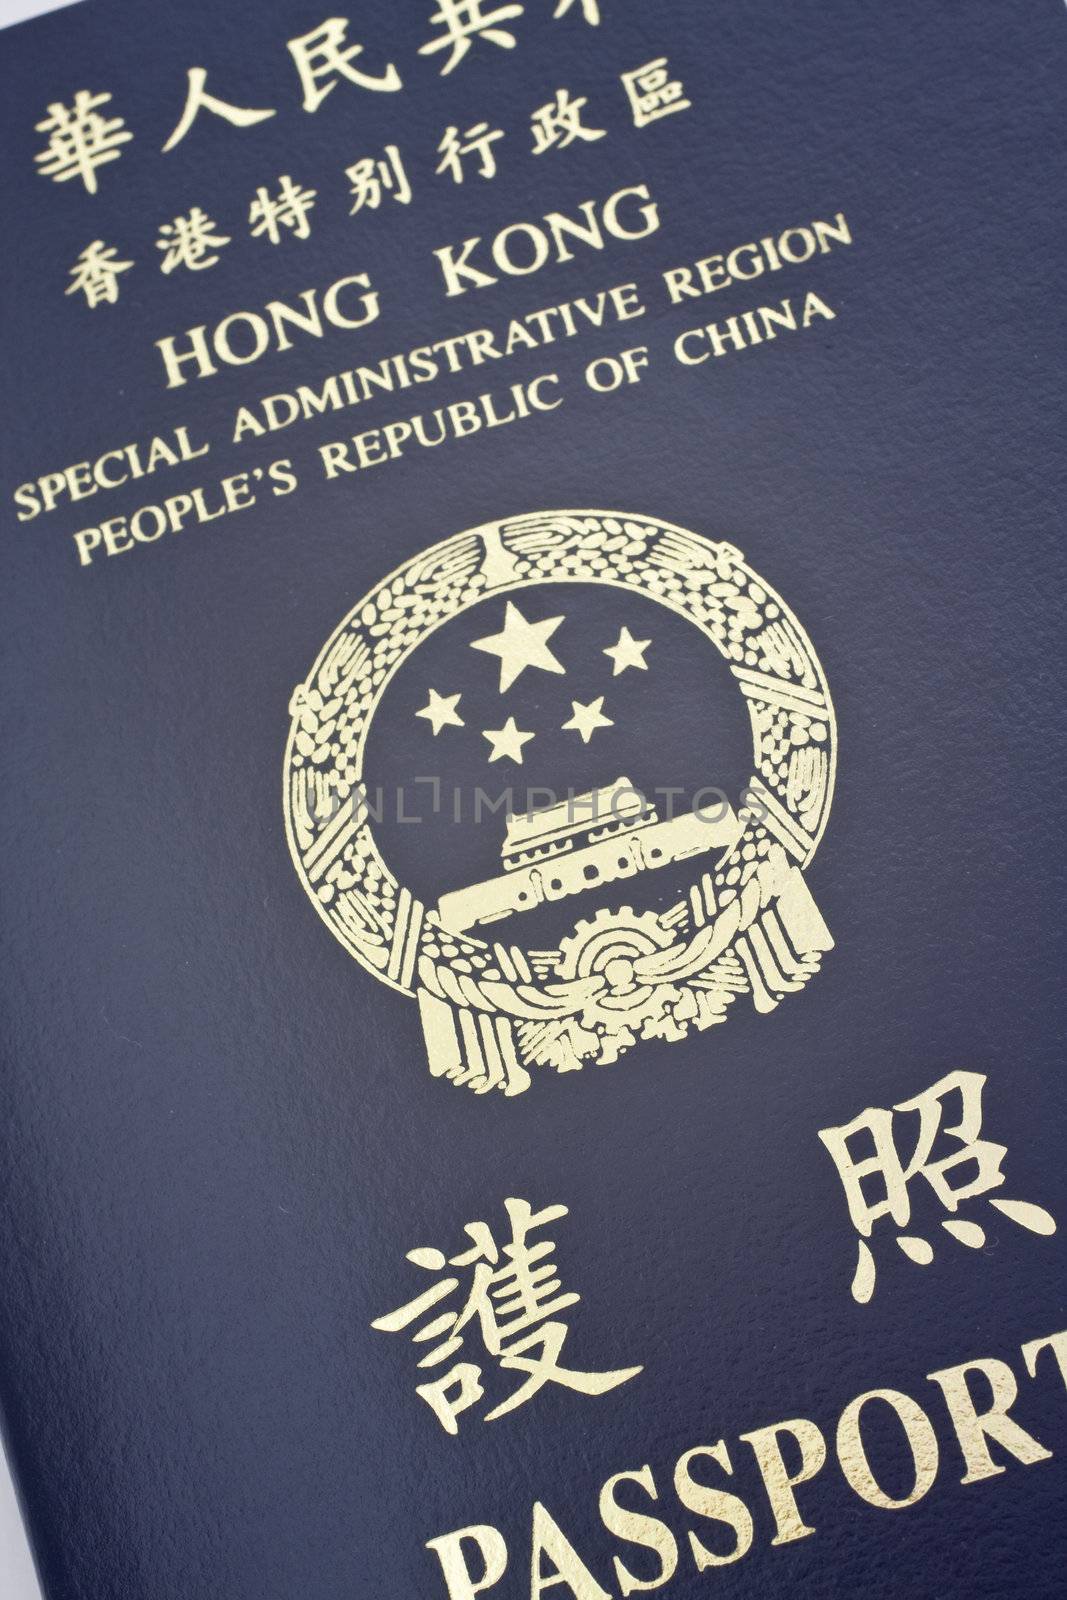 It is a close shot of Hong Kong passport